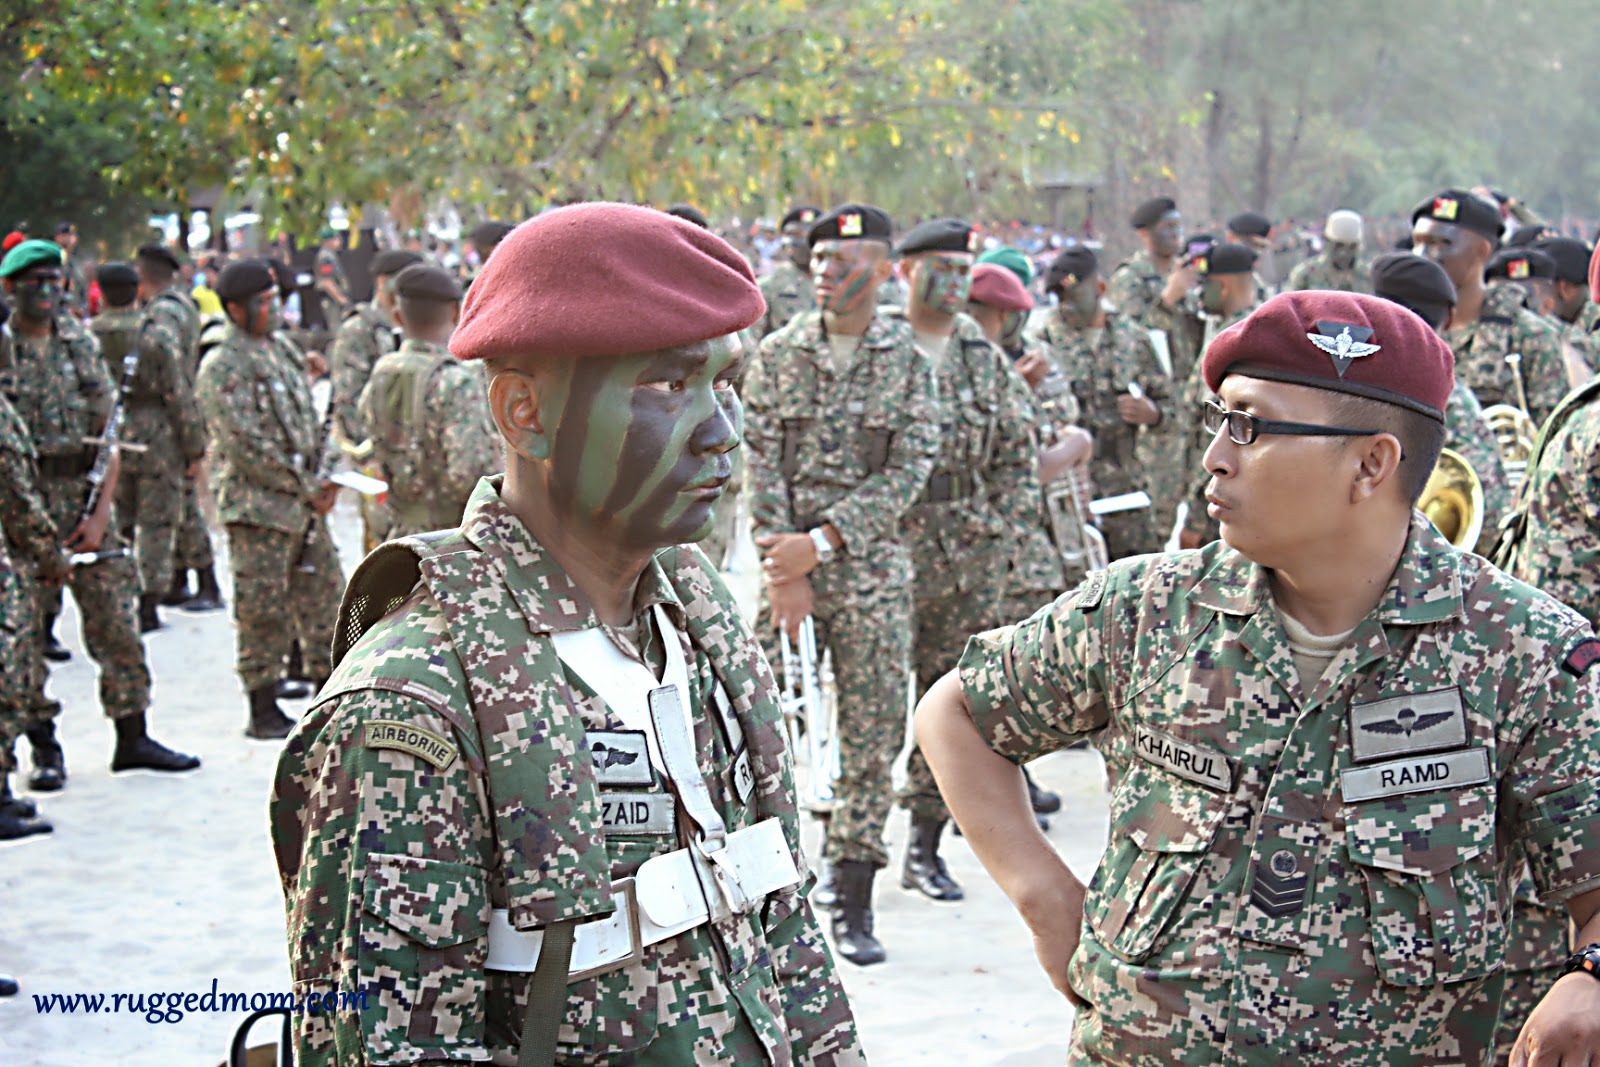 Sambutan Hari Tentera  Darat  ke 82 di Port Dickson 